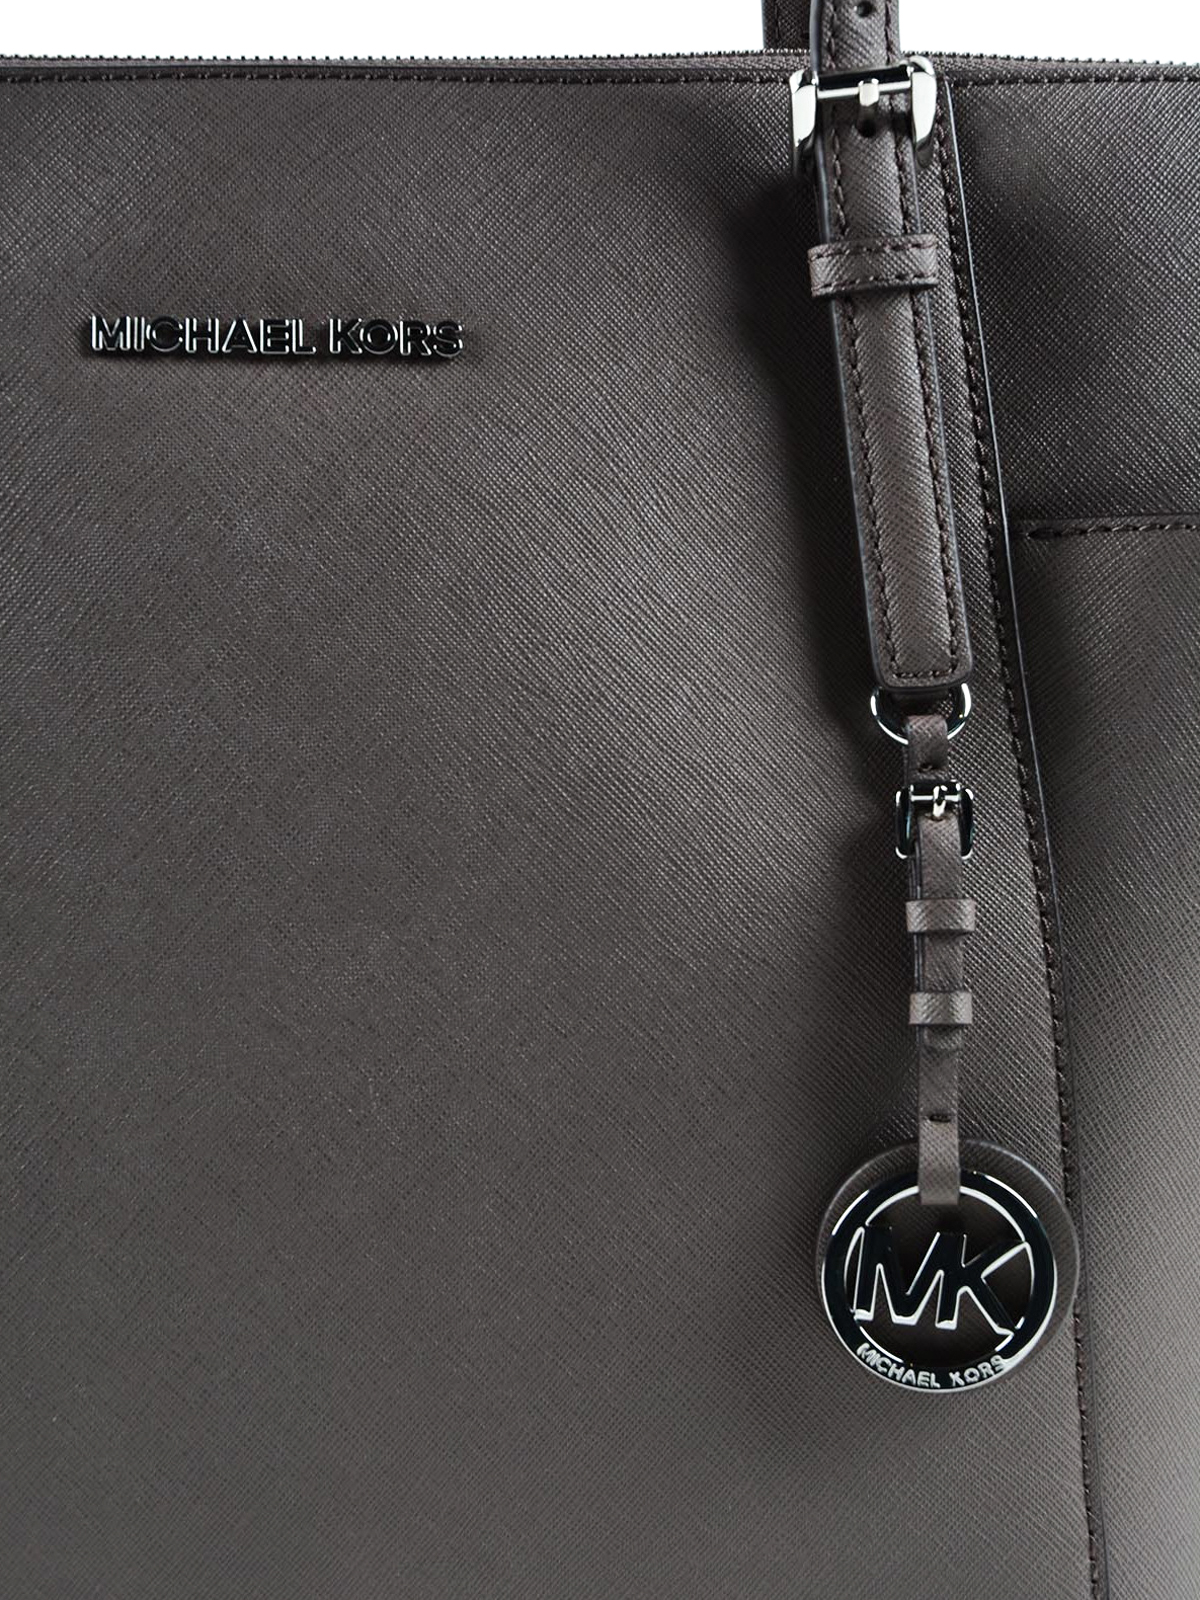 Michael Kors Jet Set Large Saffiano Leather Shoulder Bag